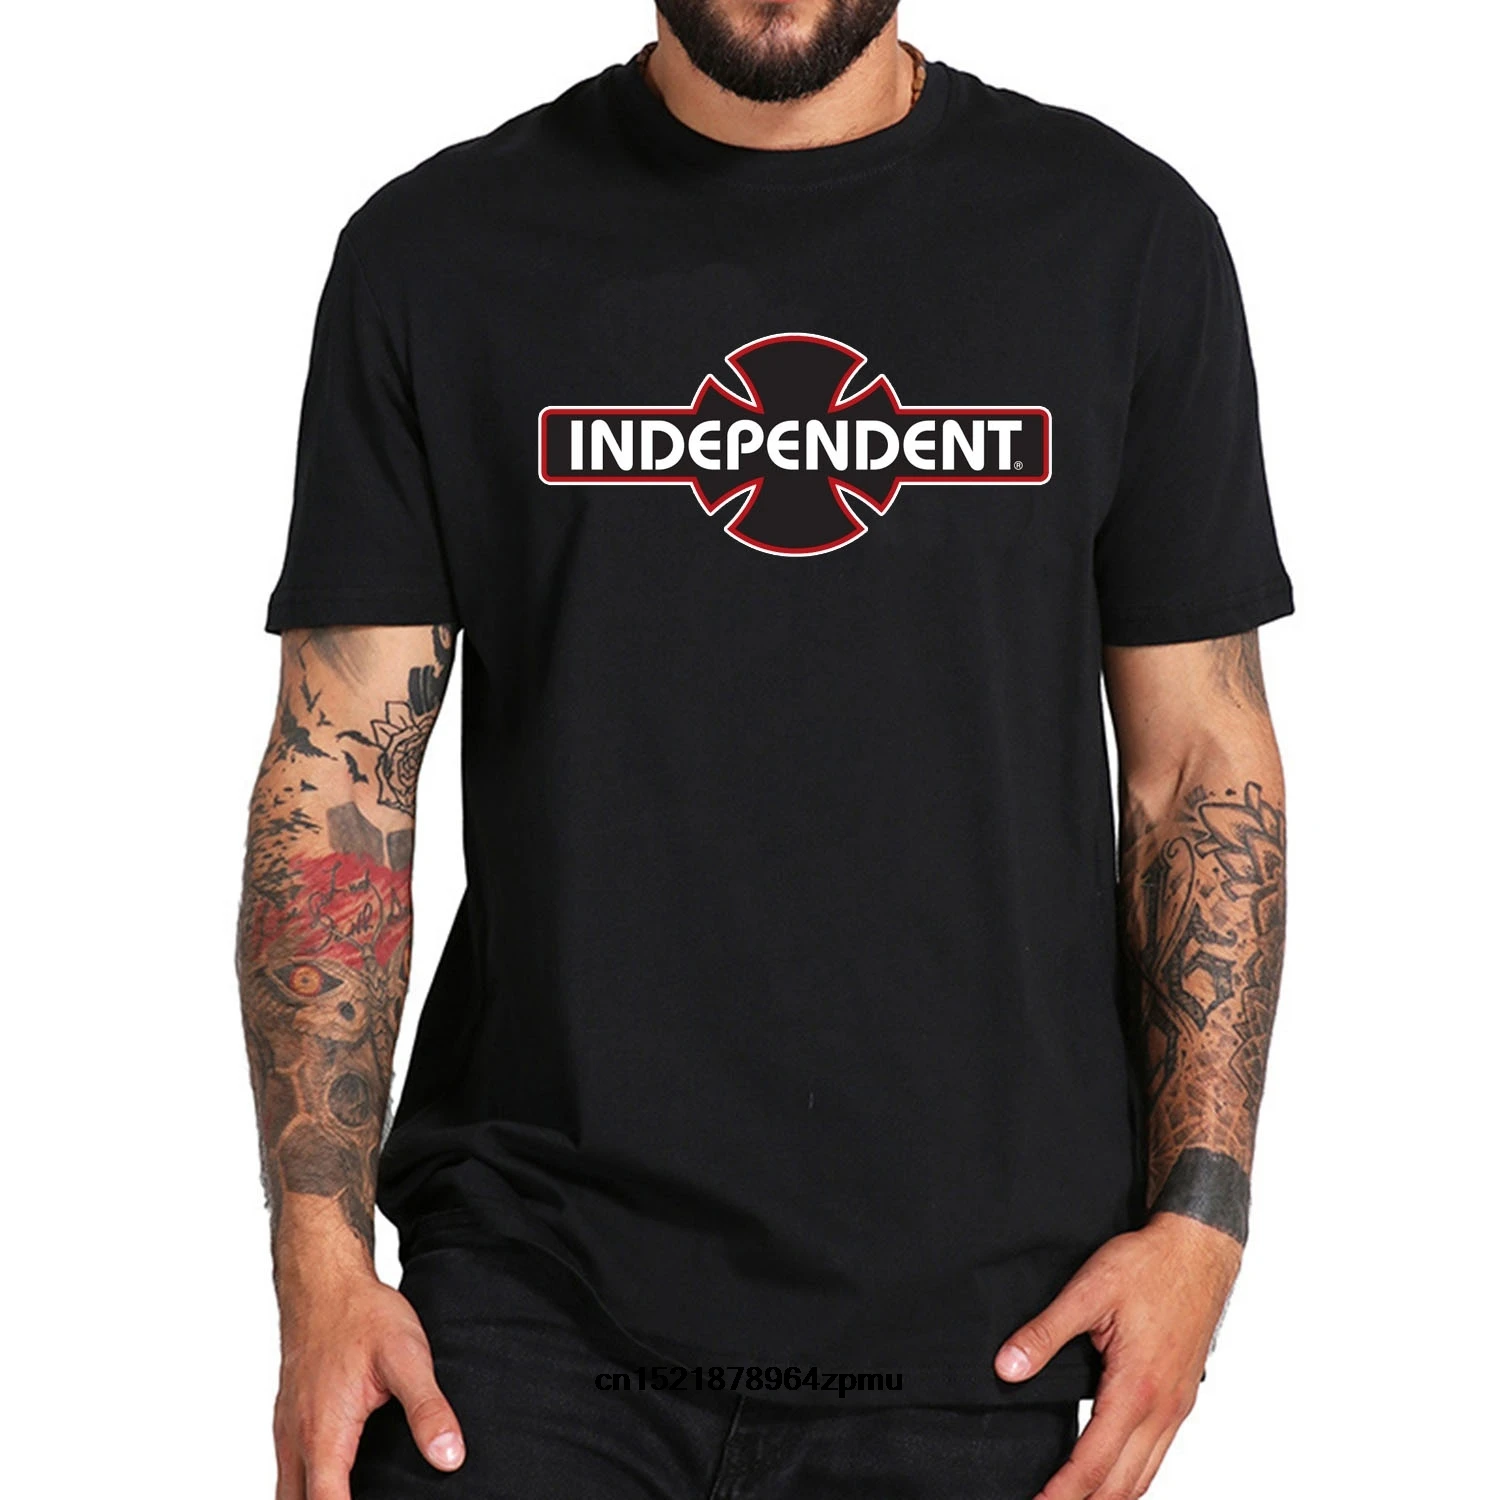 Independent Trucks OGBC LOGO Skateboard Shirt BLACK/RED LARGE 